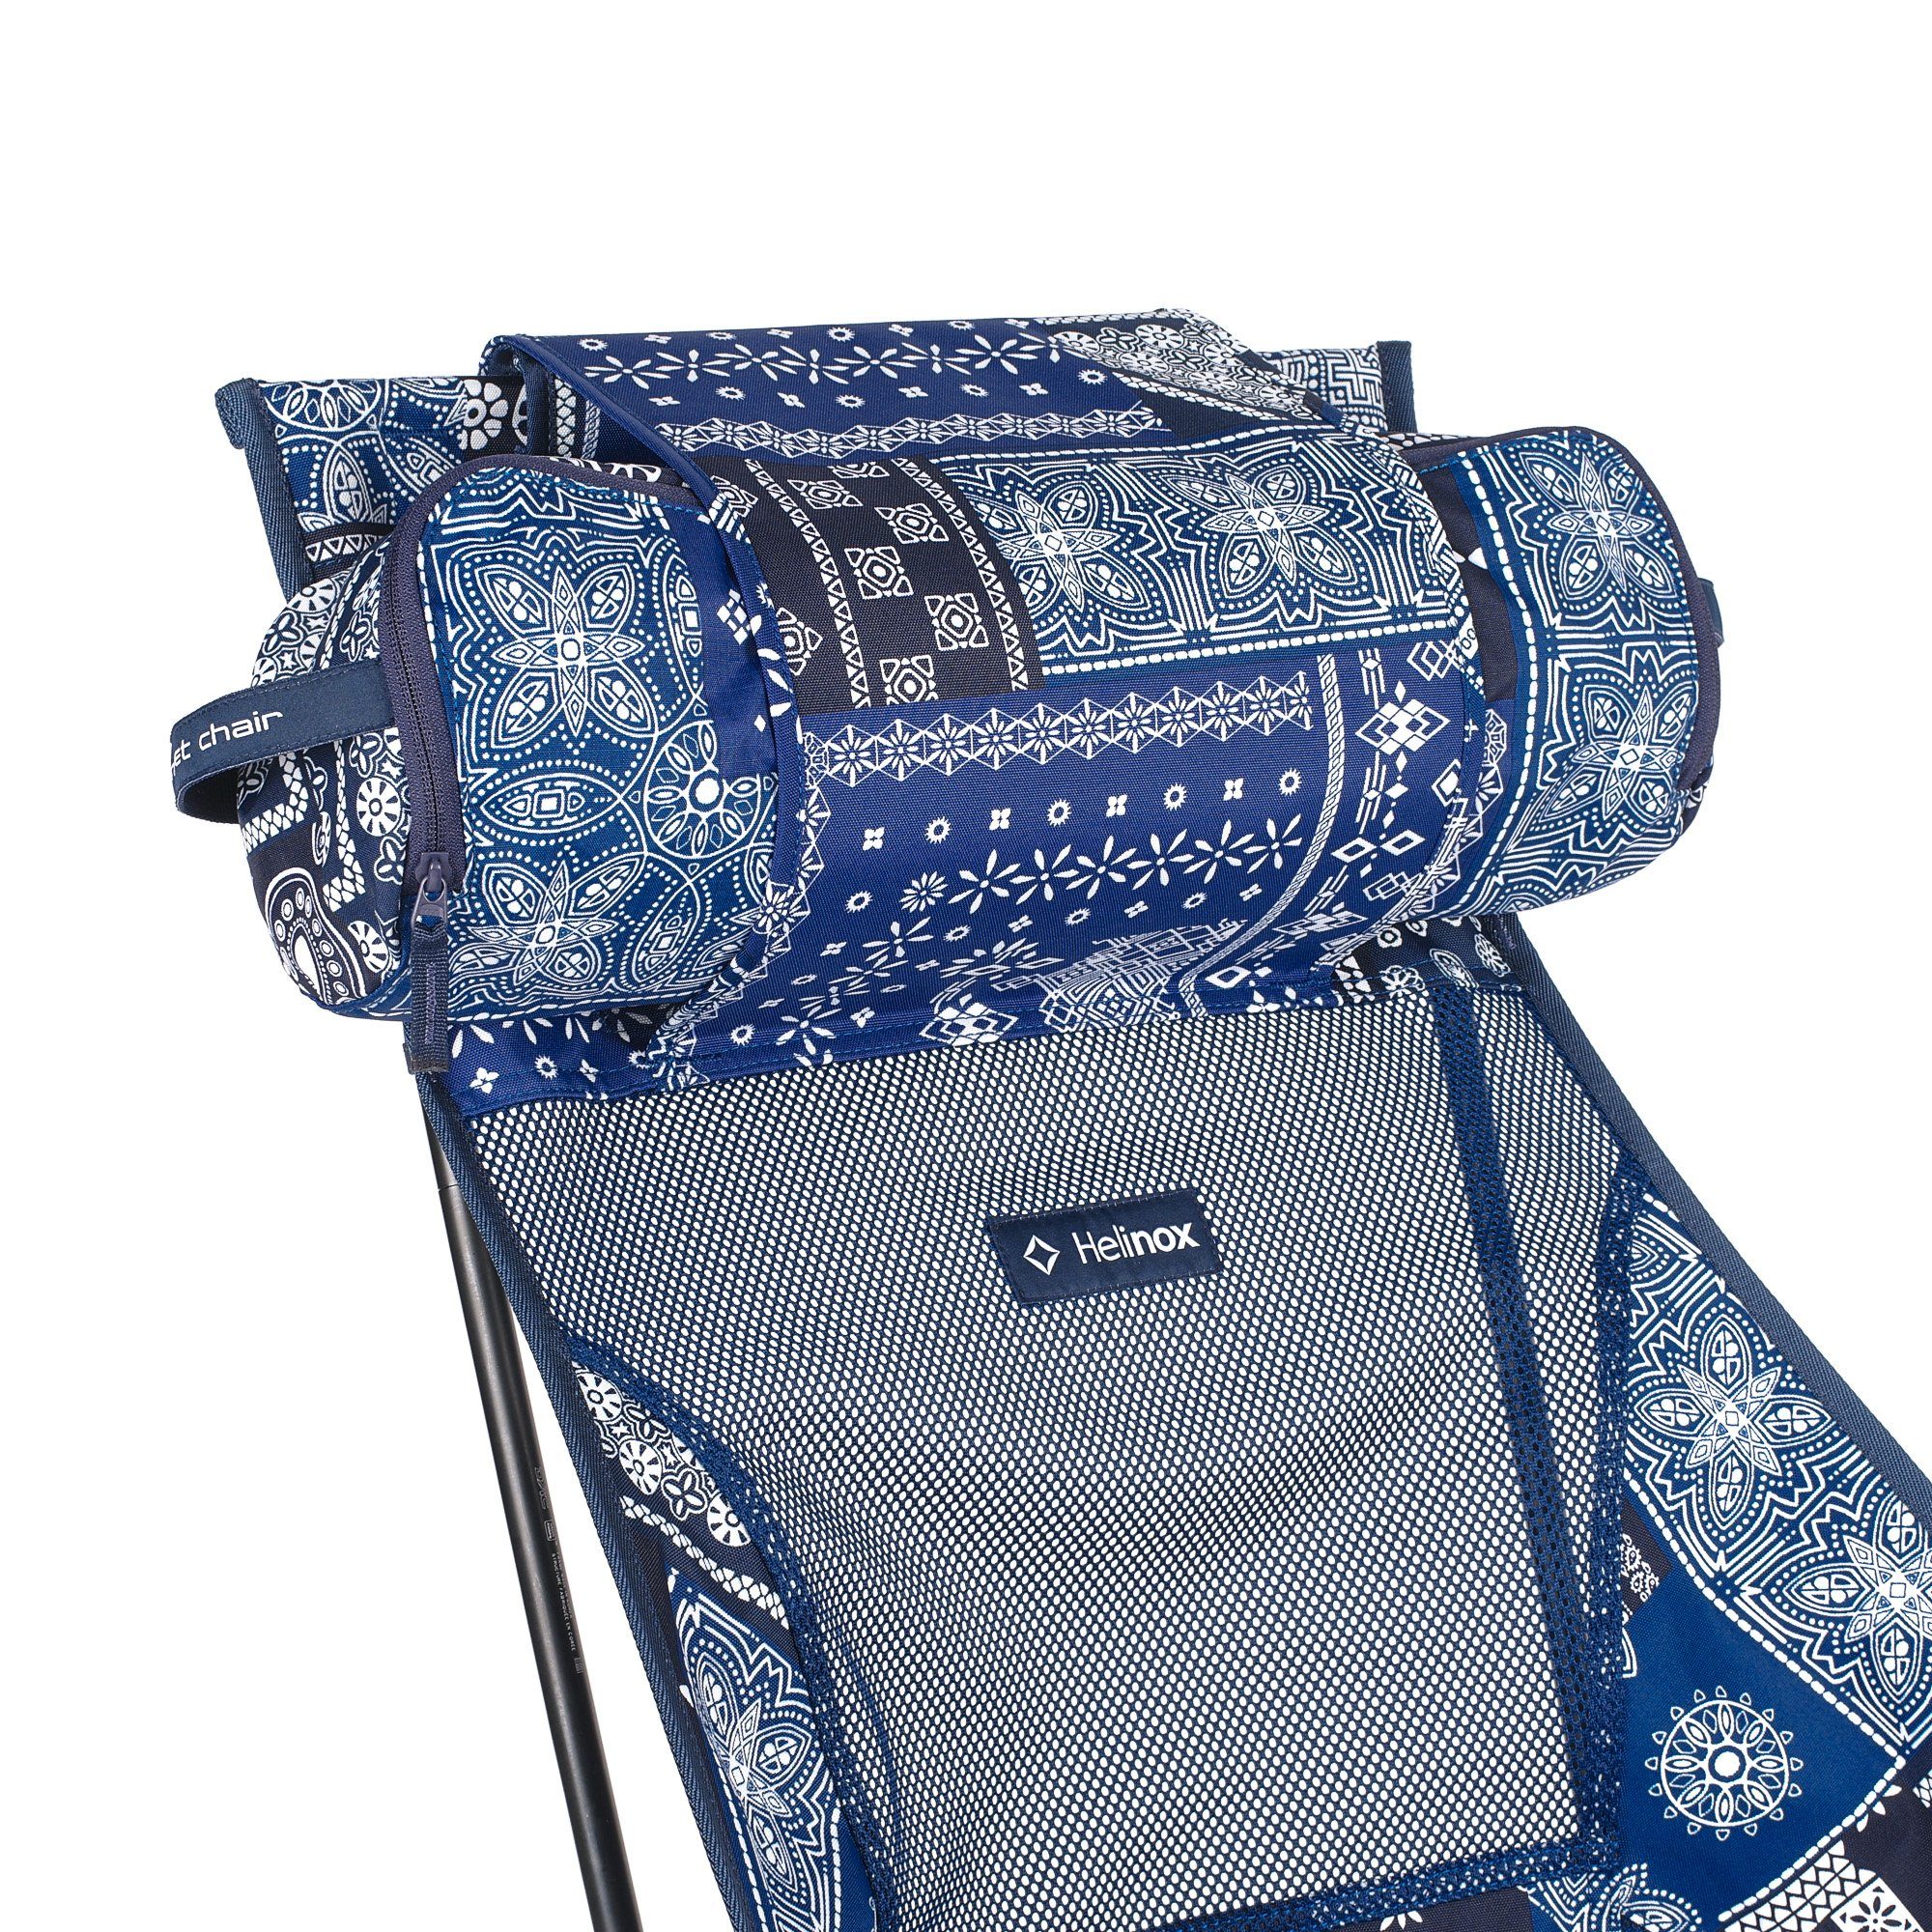 Bandanna Helinox Blue Quilt Pockets + Campingstuhl